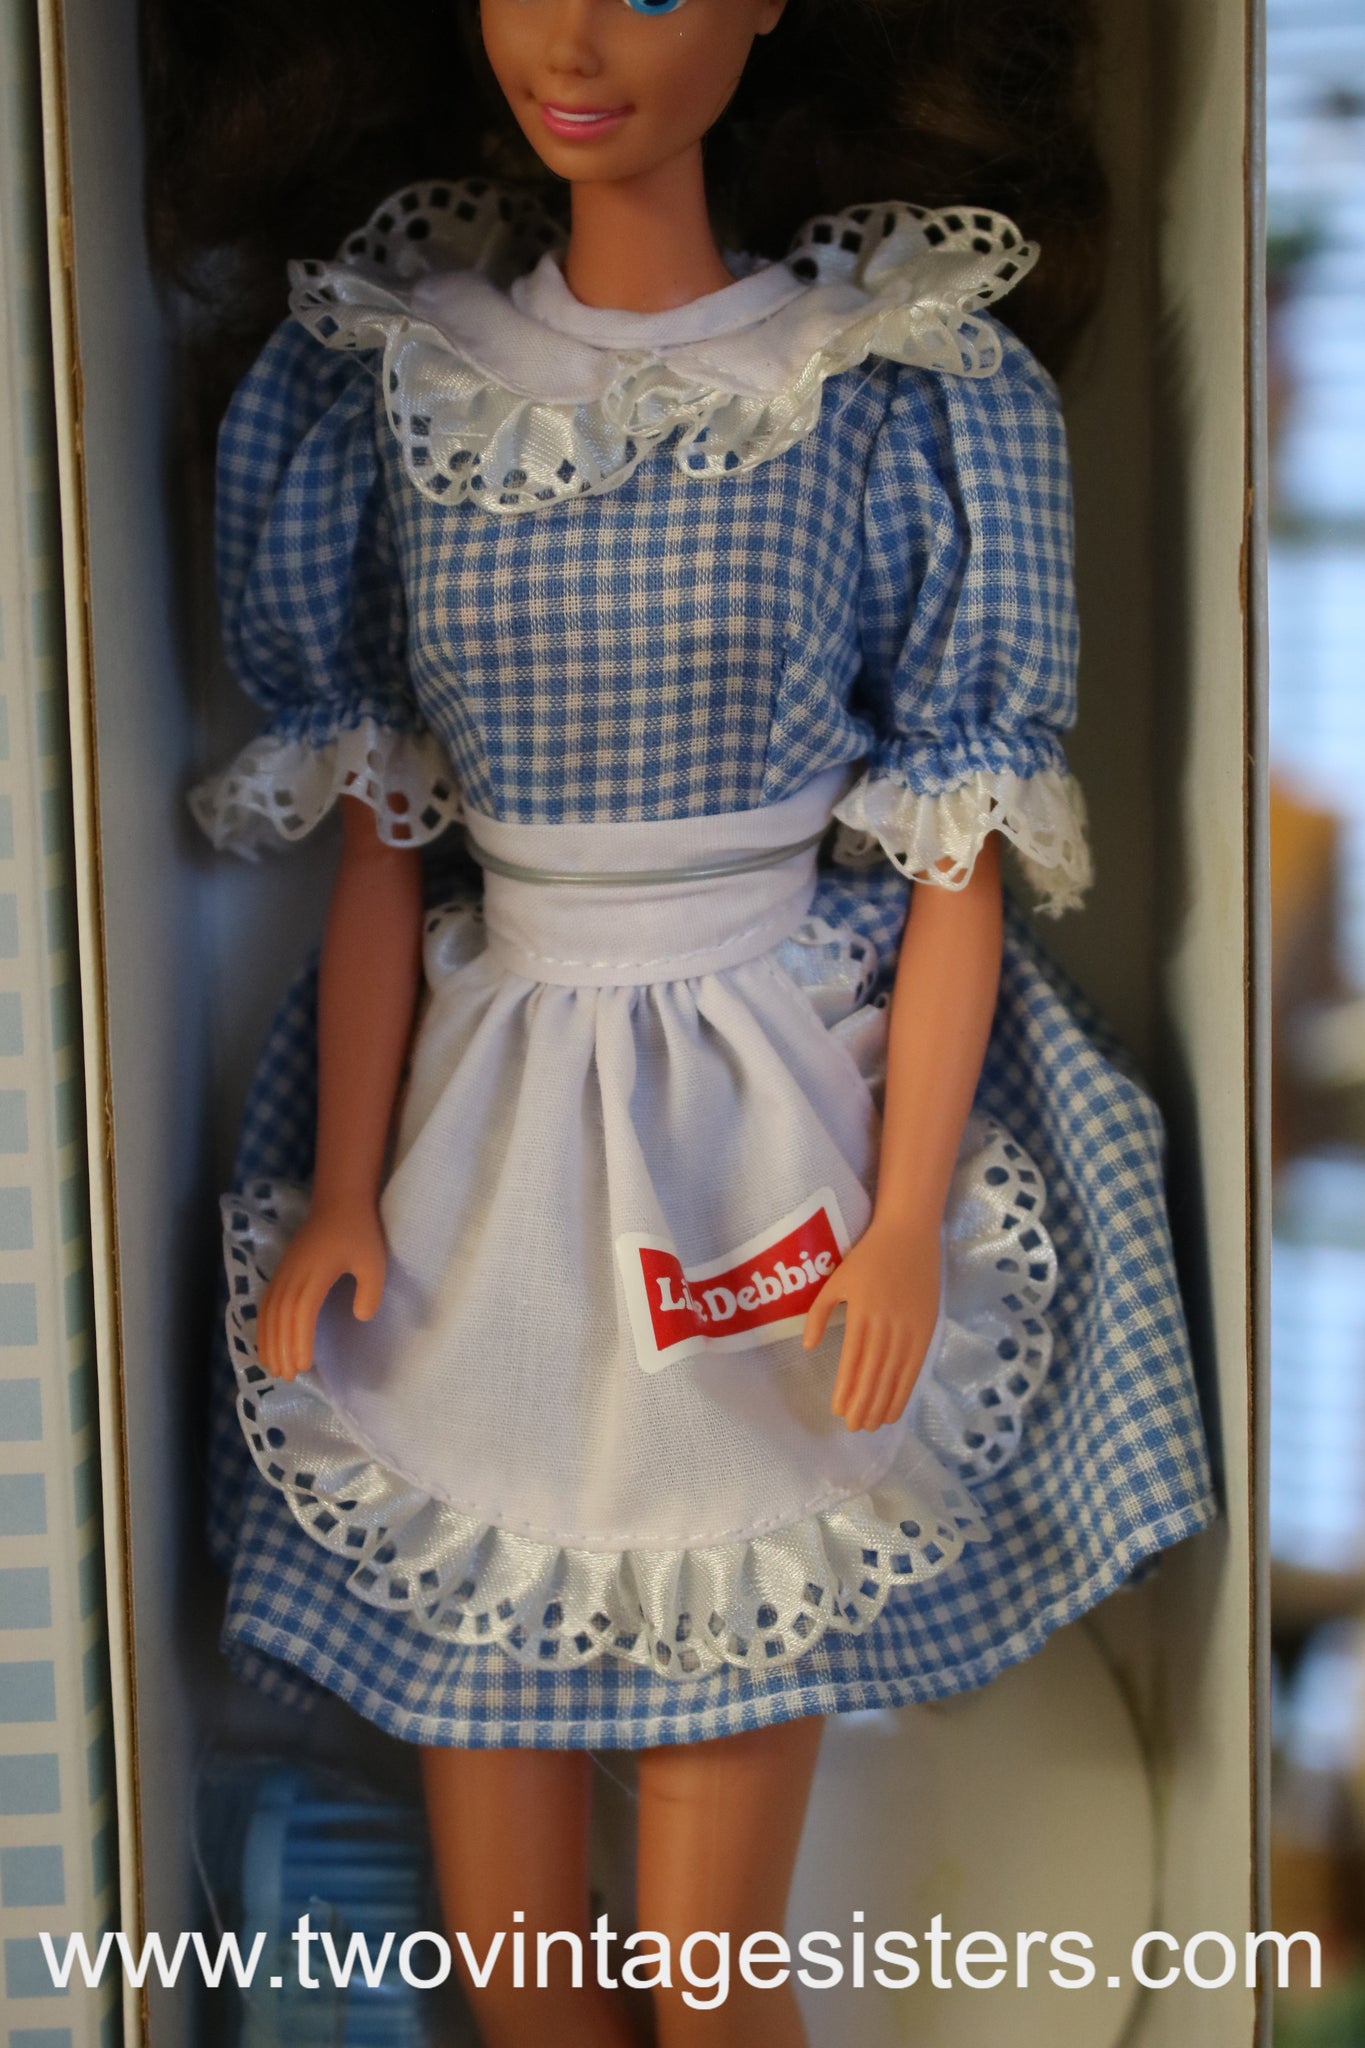 Barbie Little Debbie Collectors Edition